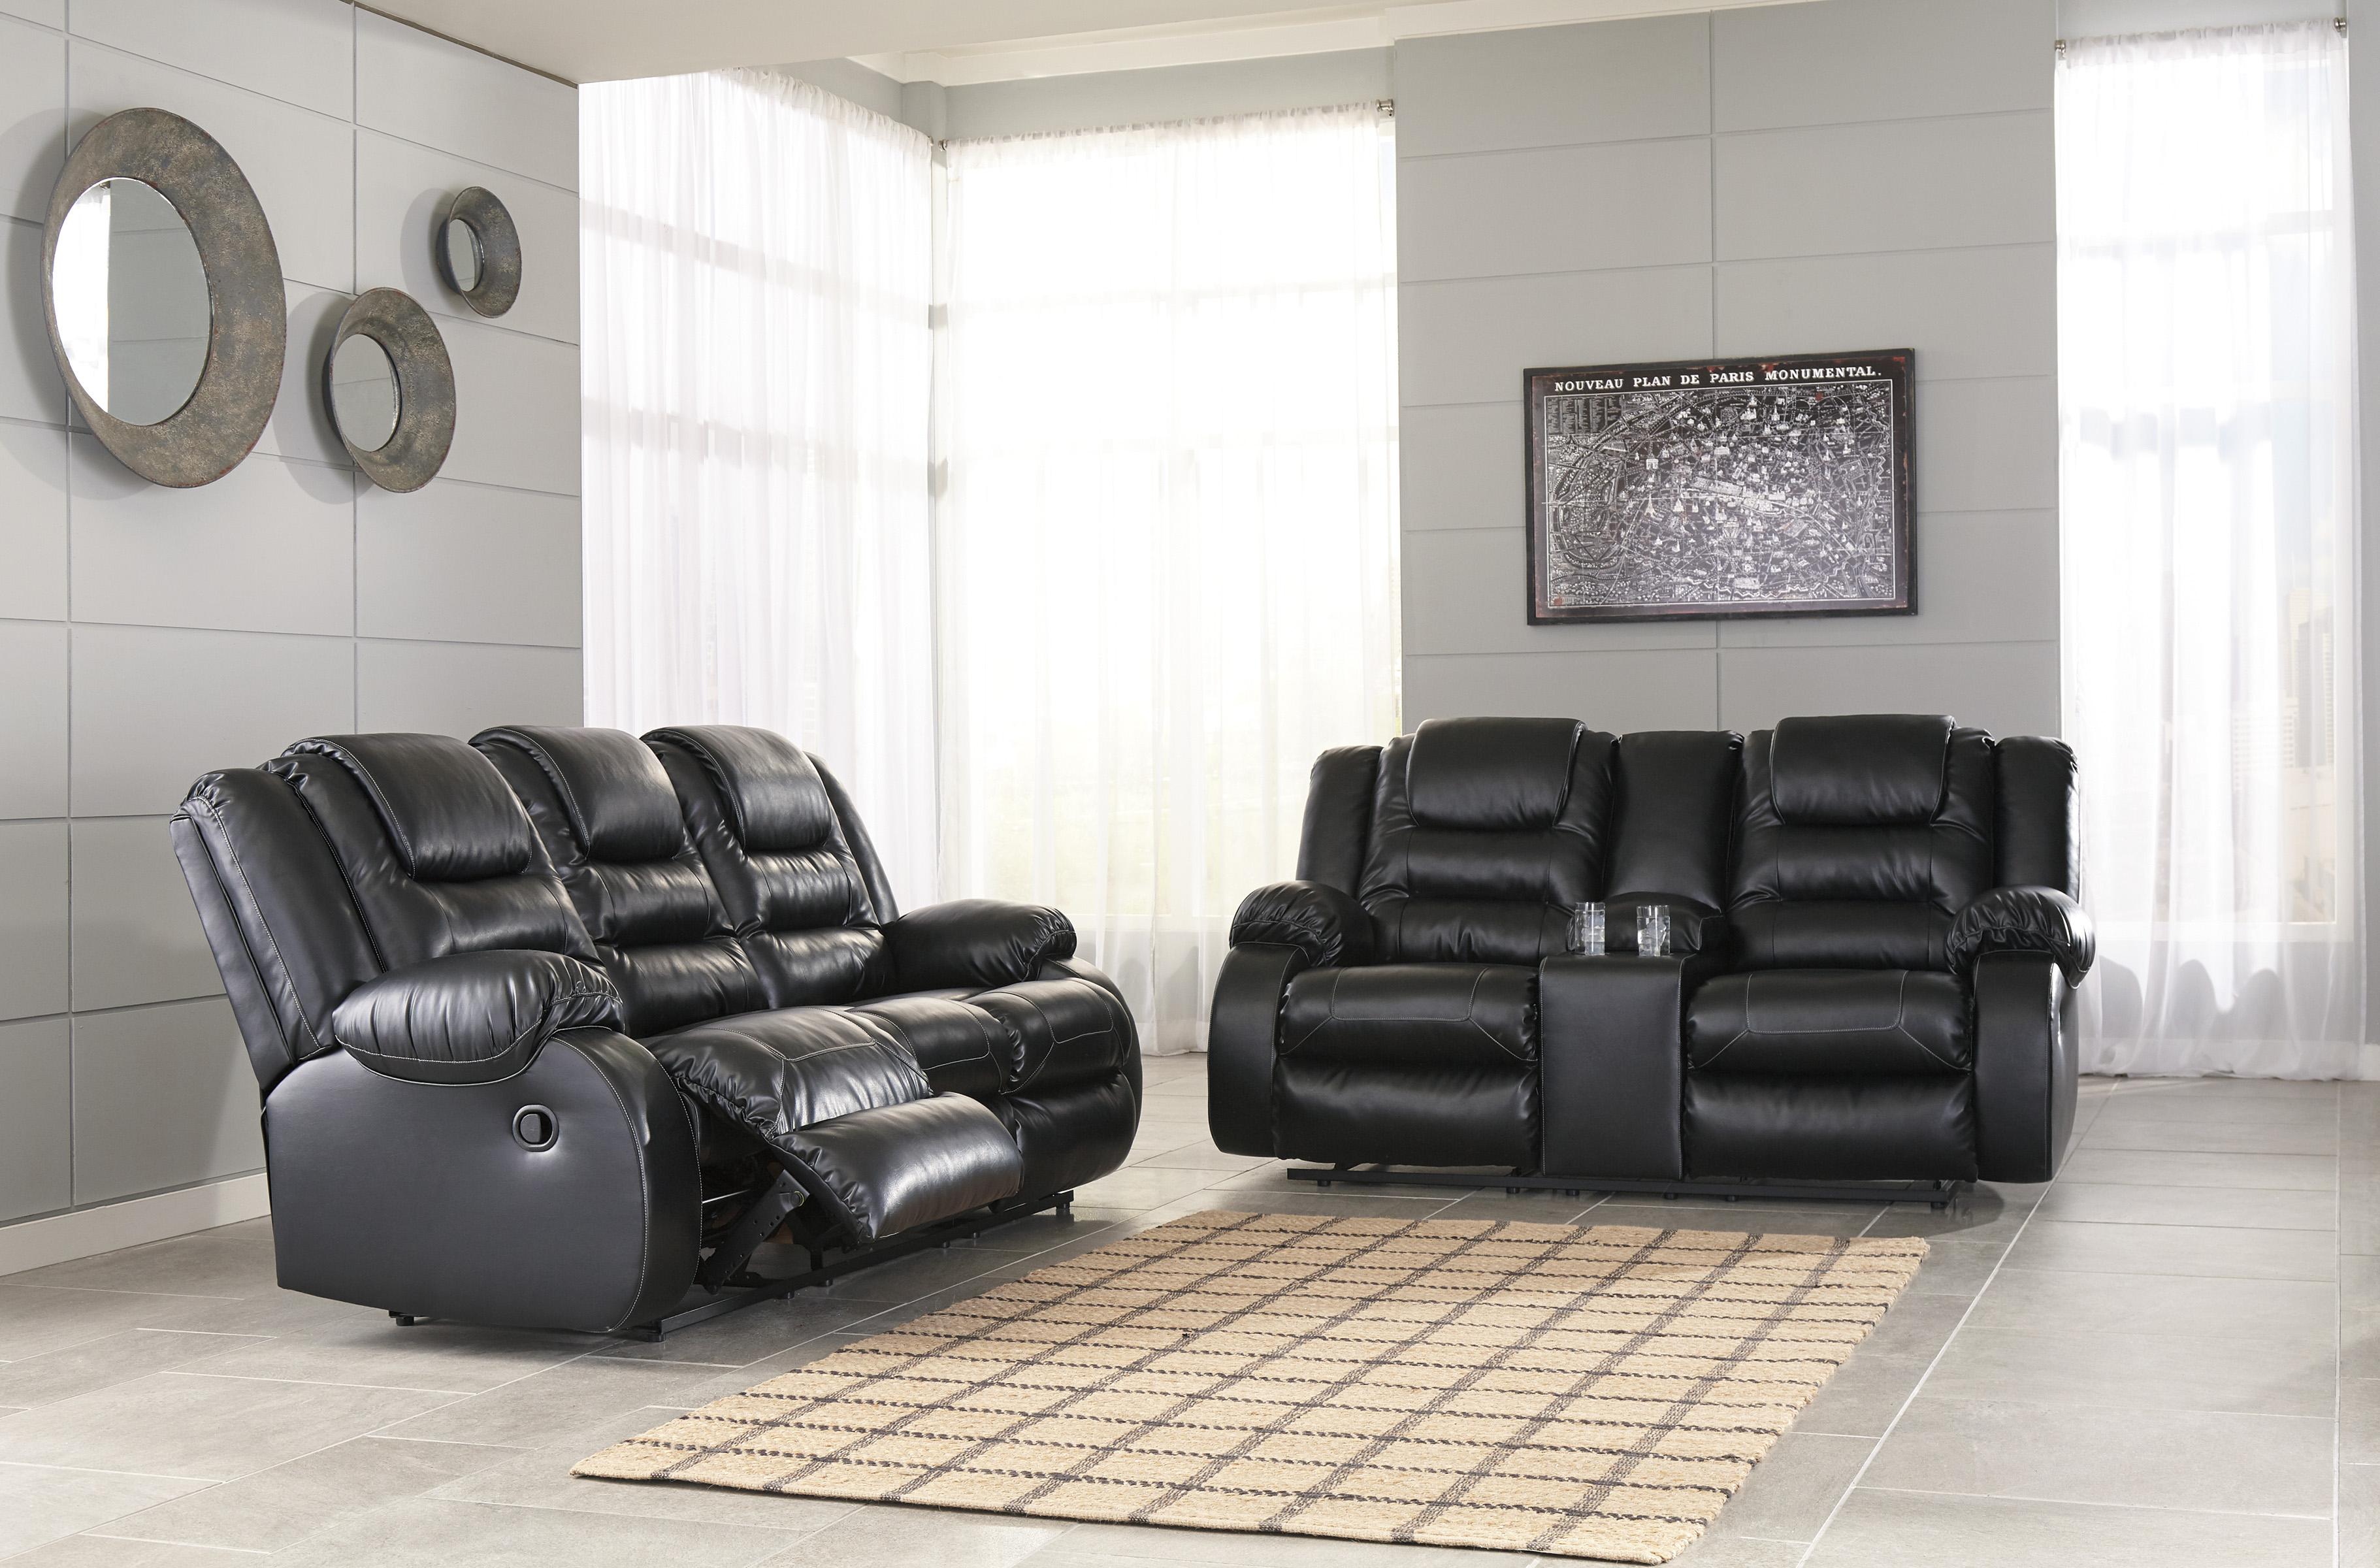 

    
Reclining Sofa Set 2Pcs Black Faux Leather Contemporary Ashley Vacherie
